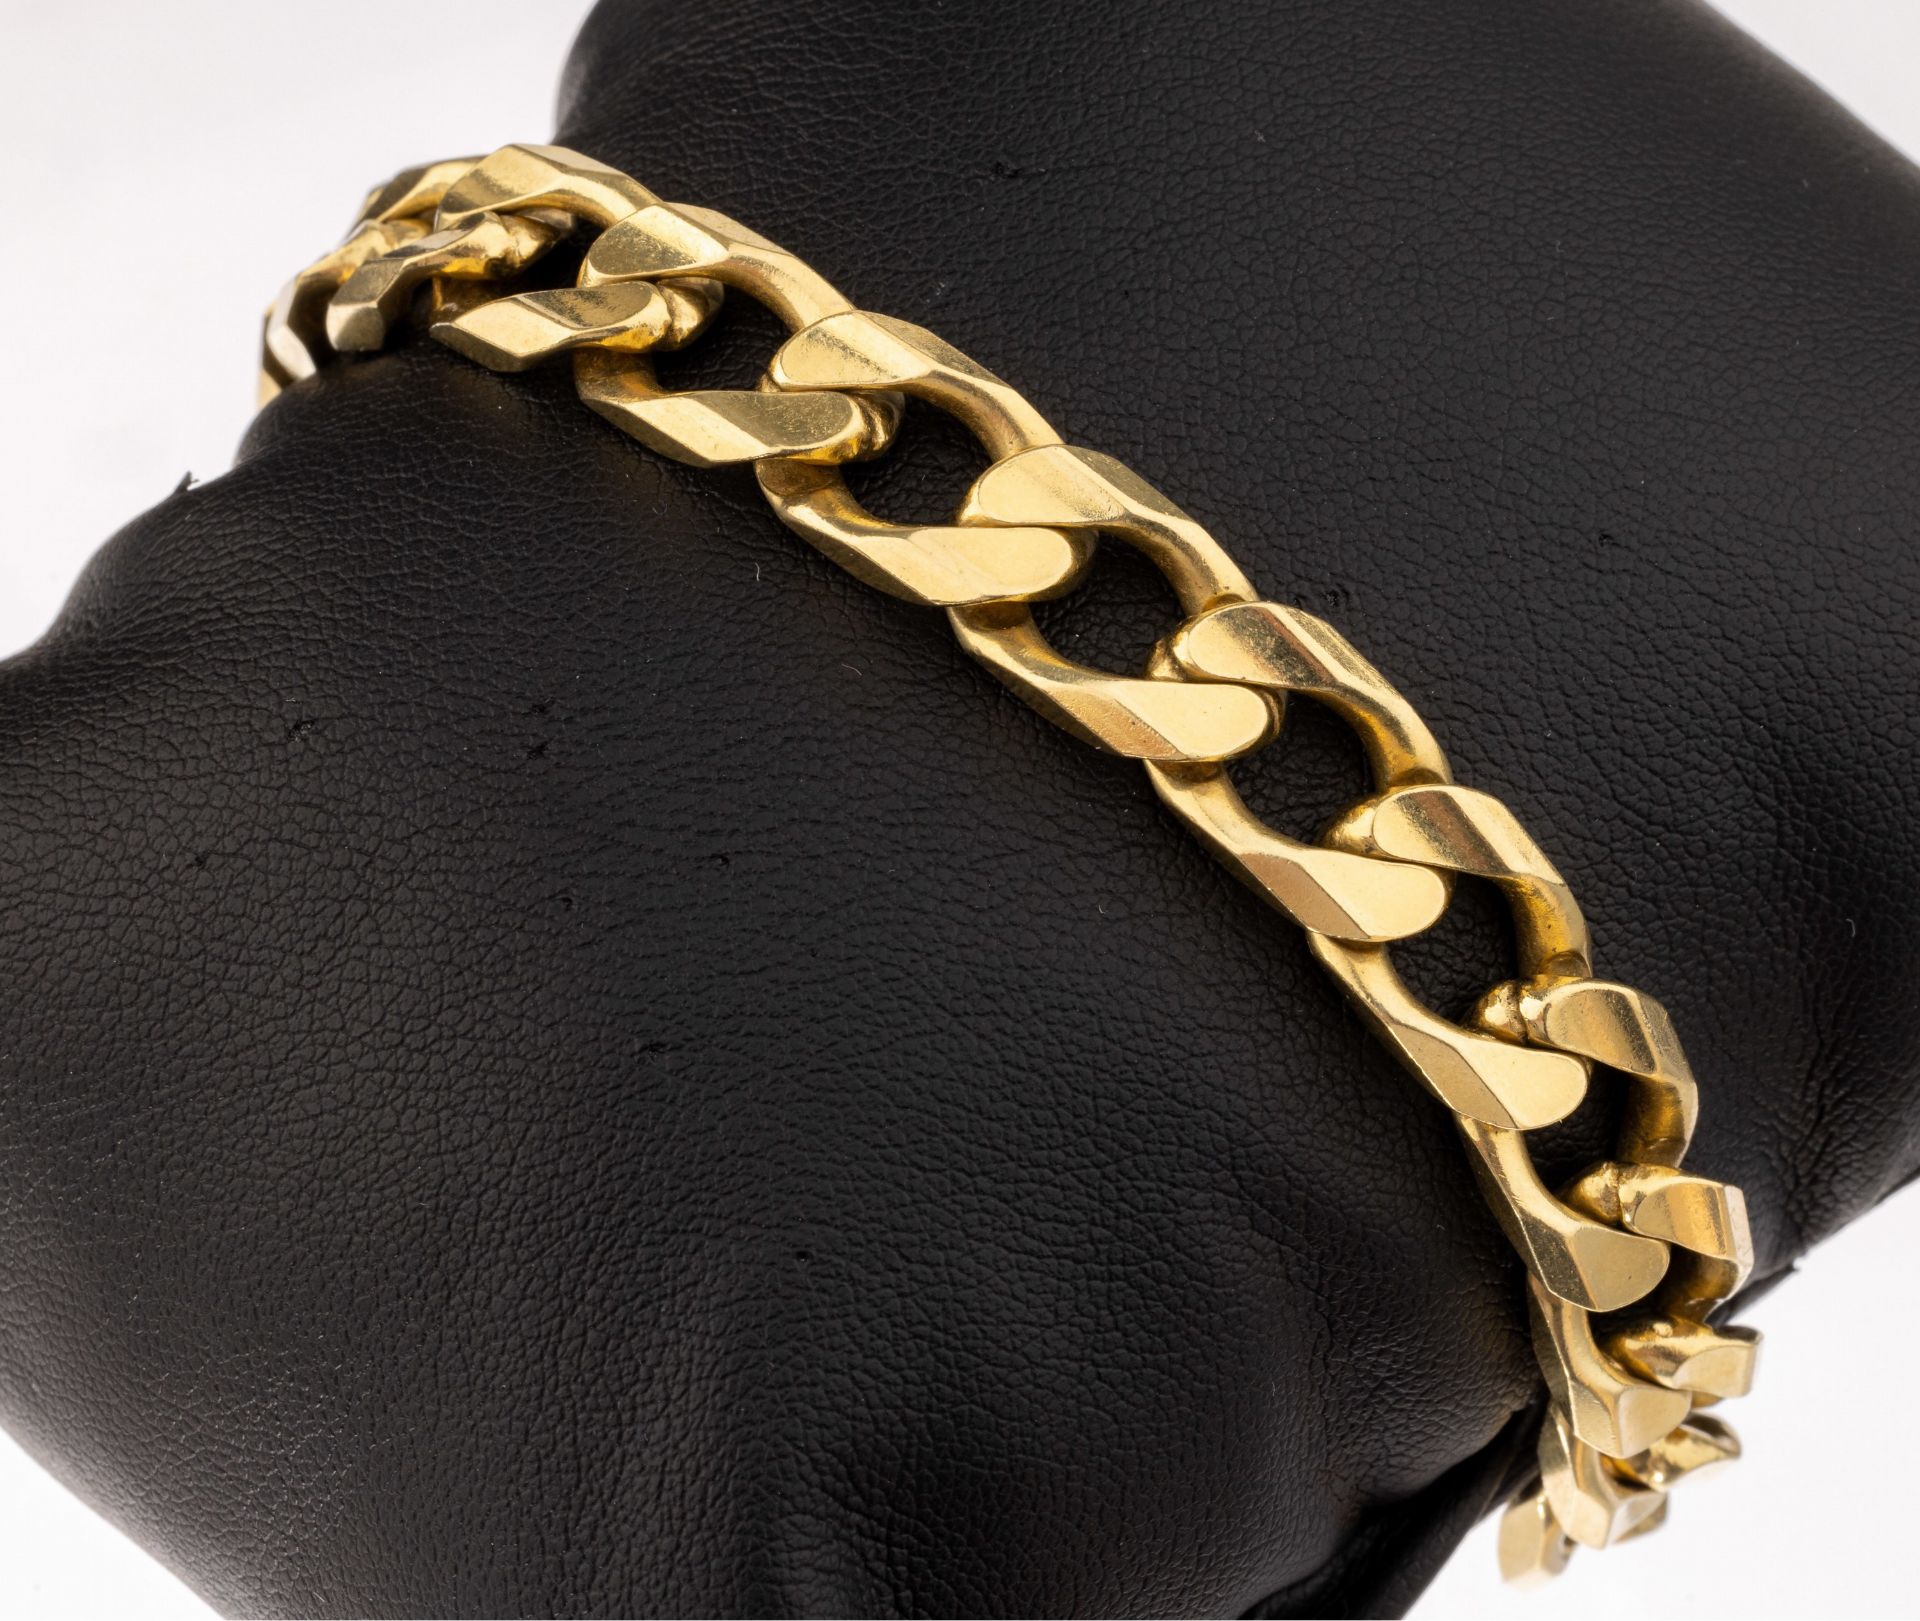 18 kt Gold Armband,   GG 750/000, schwere massive